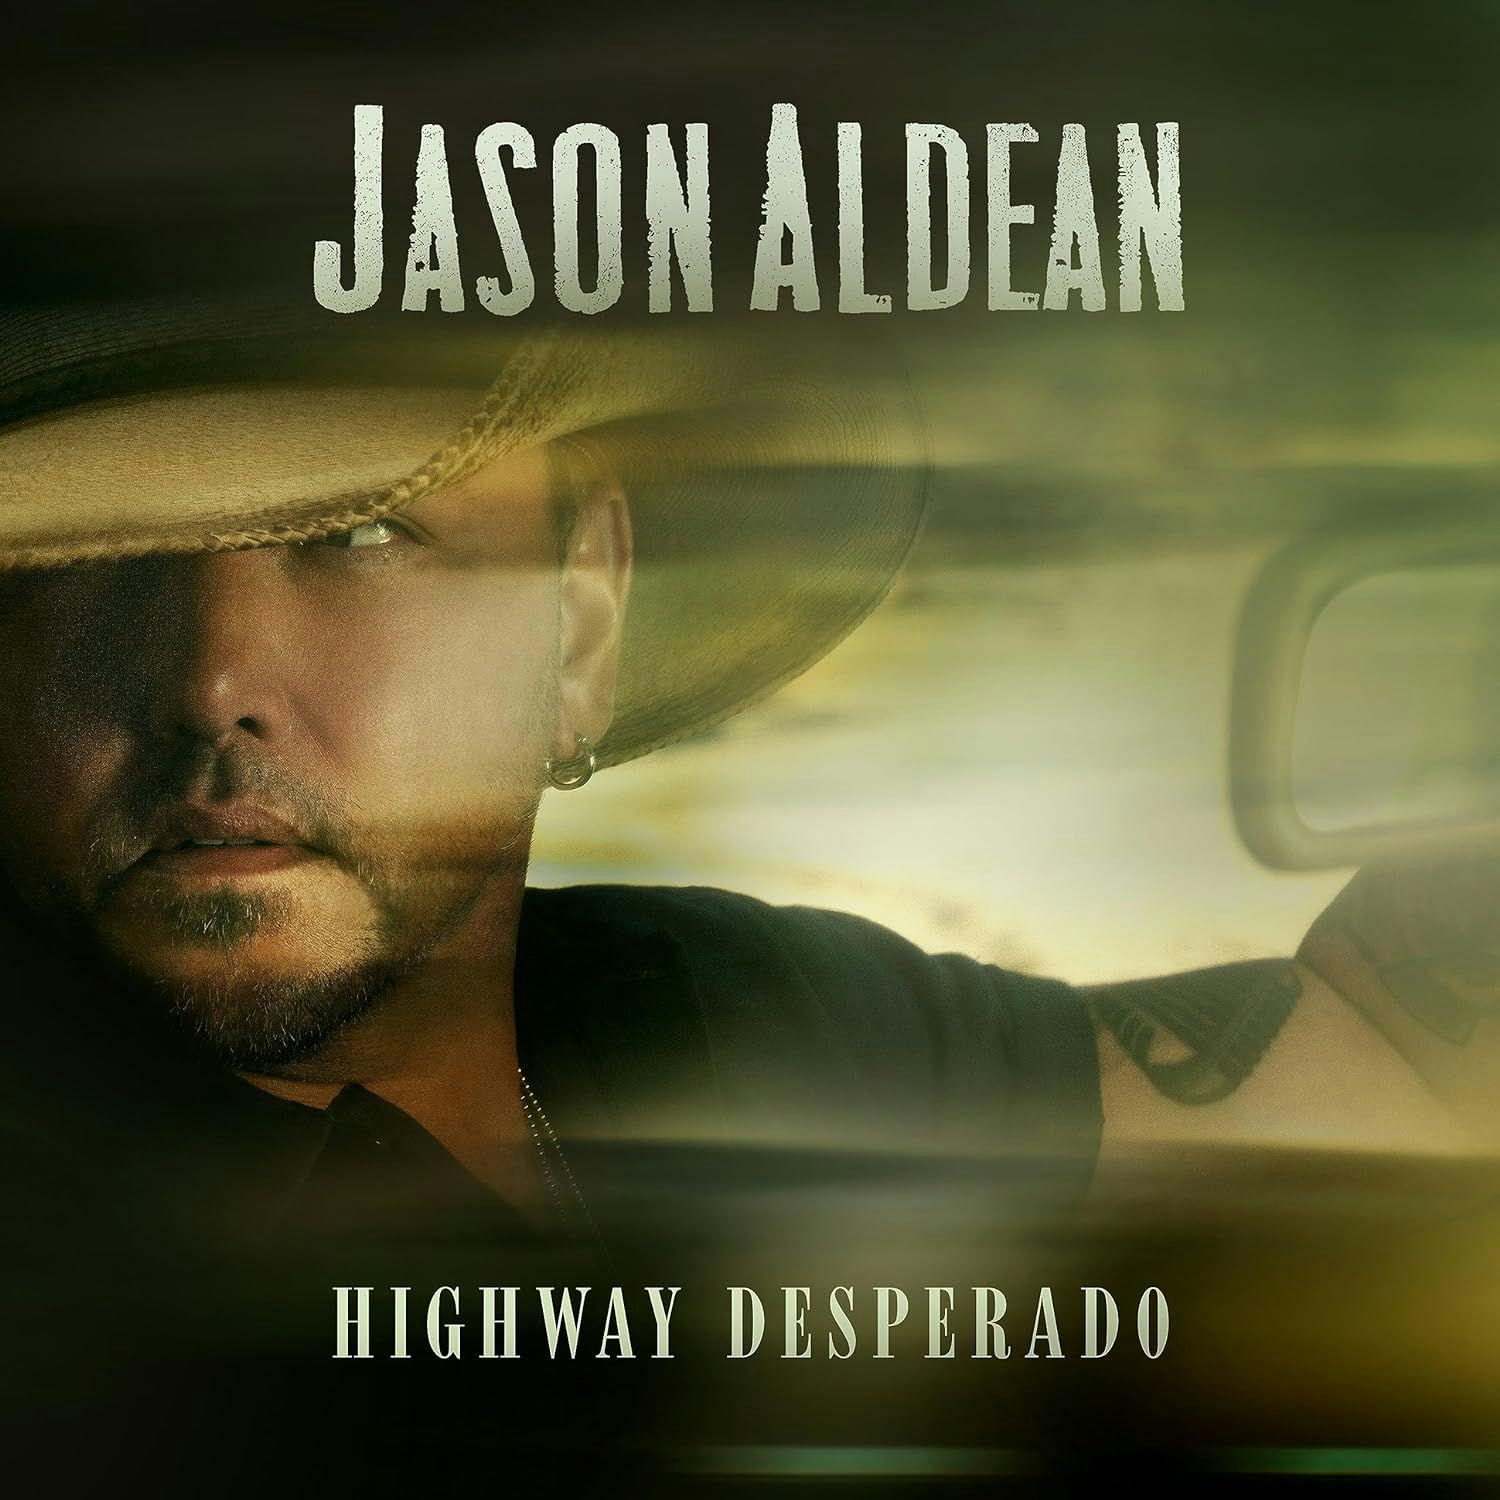 Highway Desperado Vinyl Record - Jason Aldean